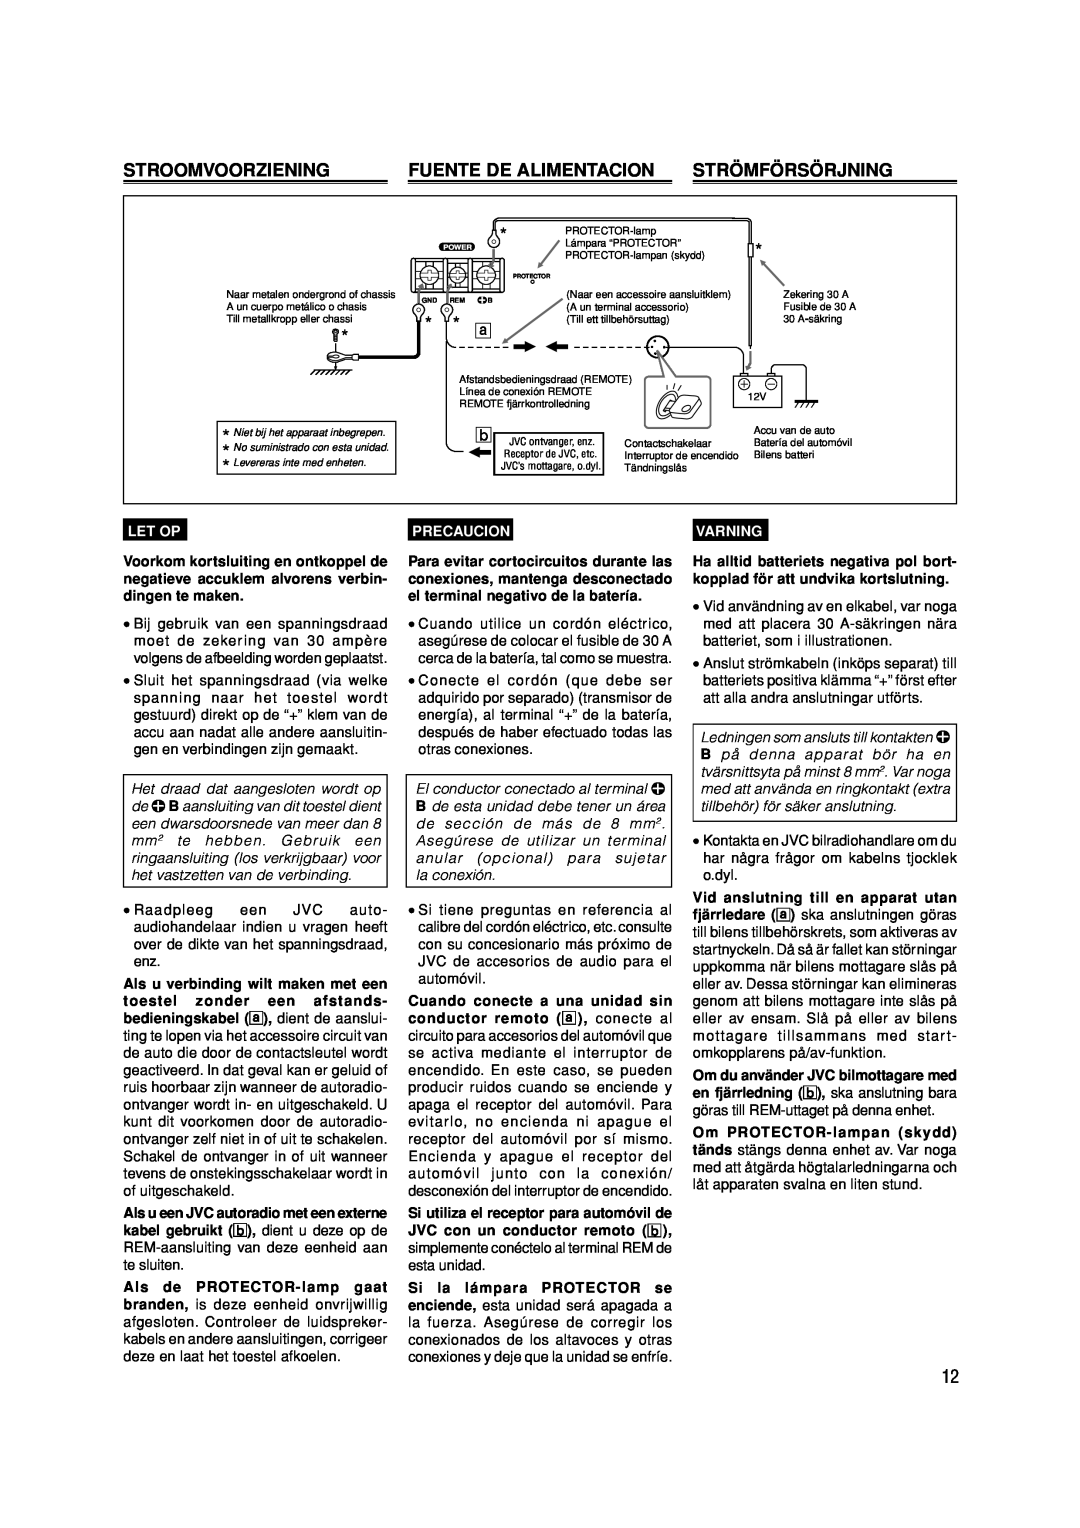 JVC KS-AX6550, KS-AX6750 manual Stroomvoorziening, Fuente De Alimentacion, Strömförsörjning, Let Op, Precaucion, Varning 